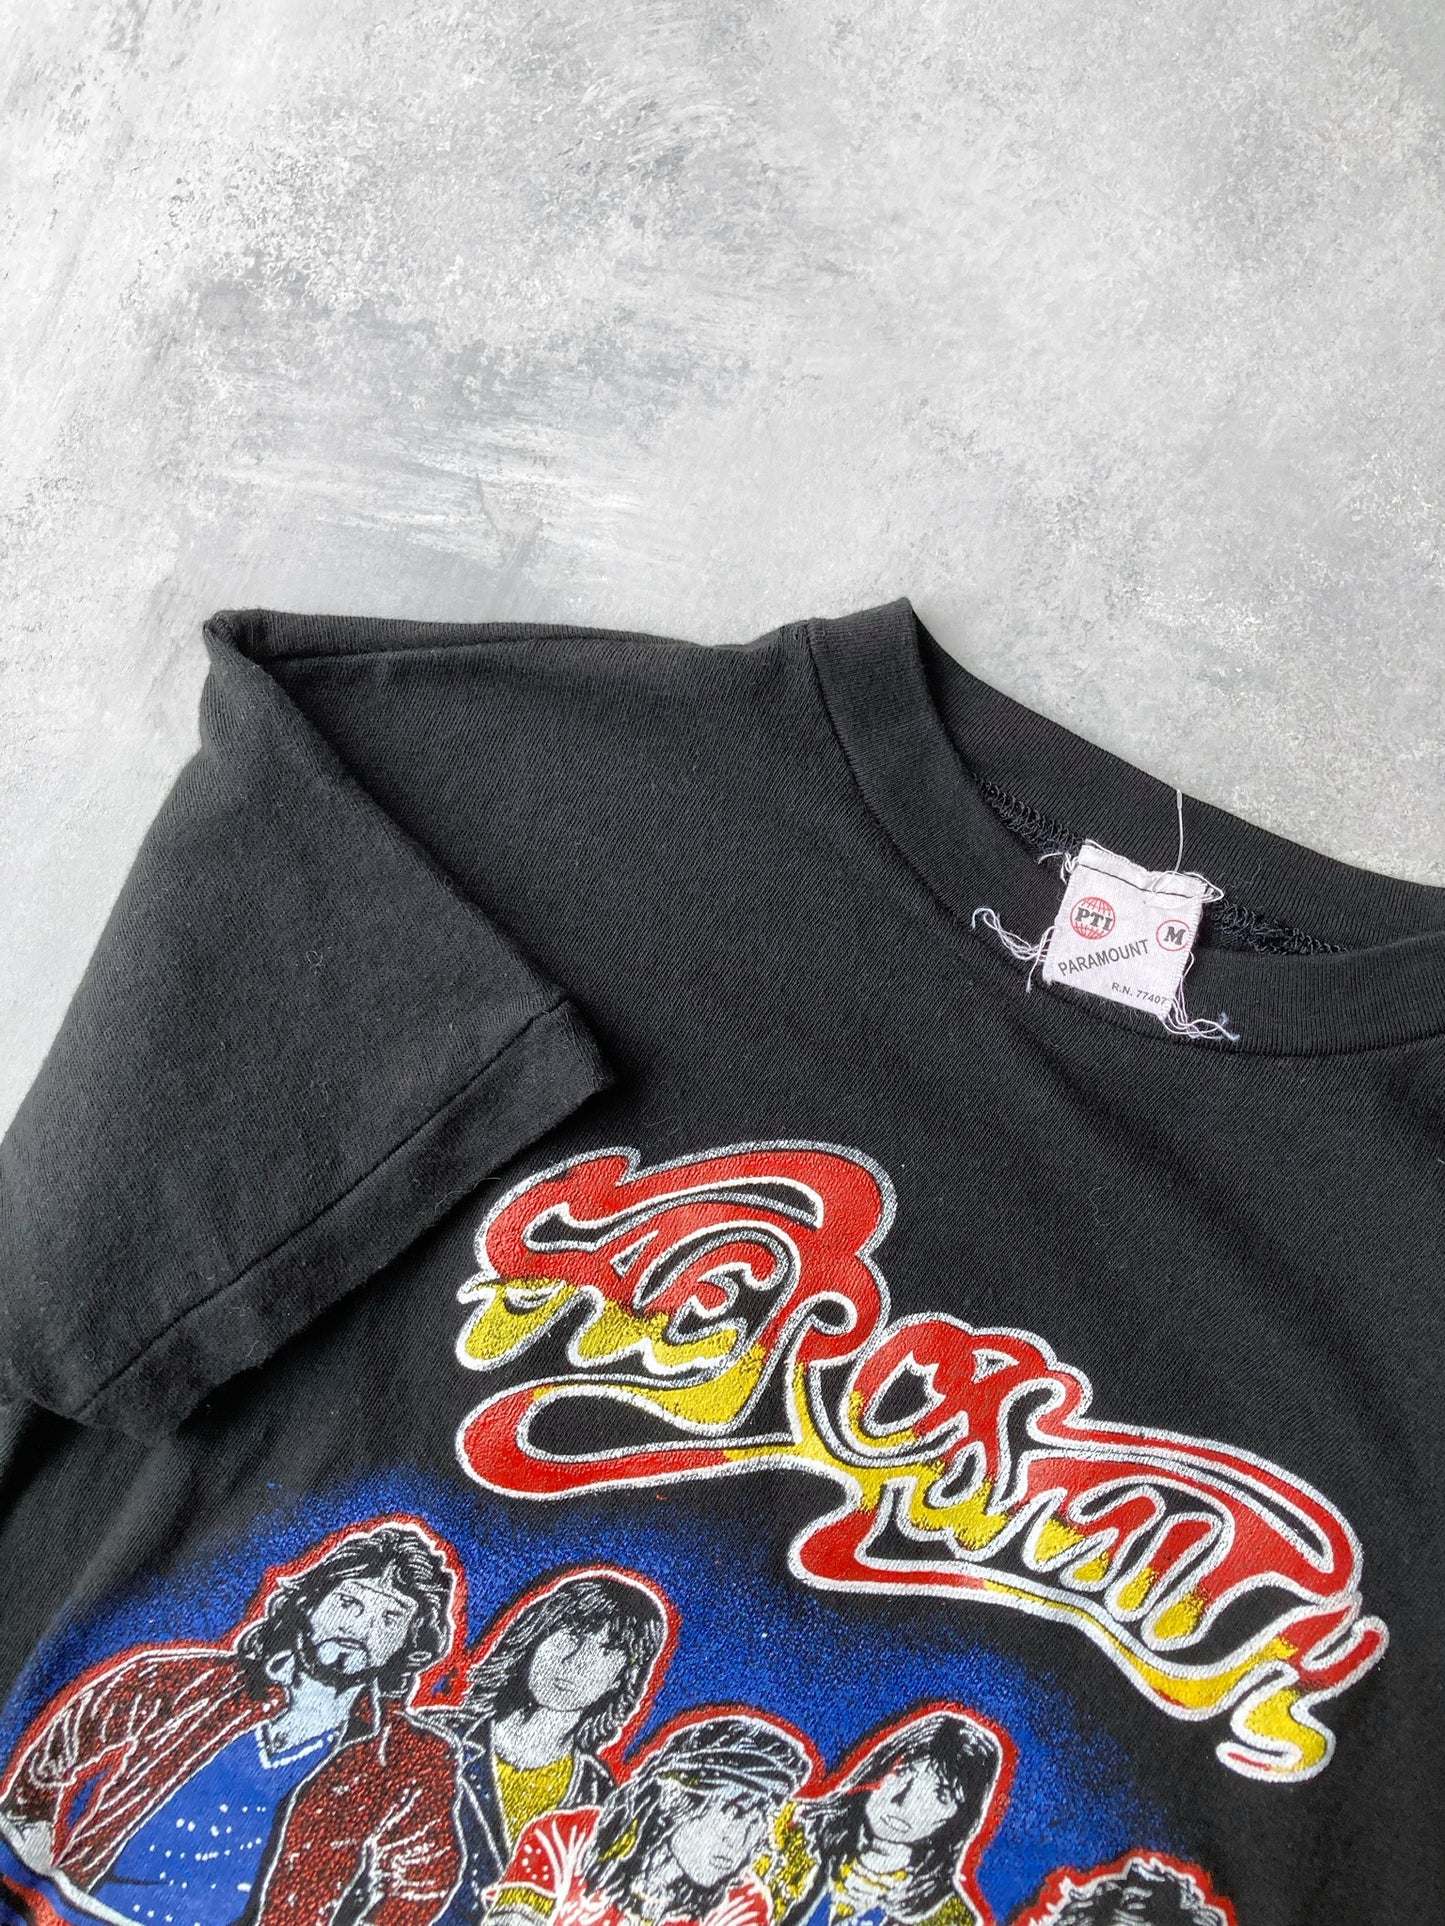 Aerosmith Tour T-Shirt '82 - Small